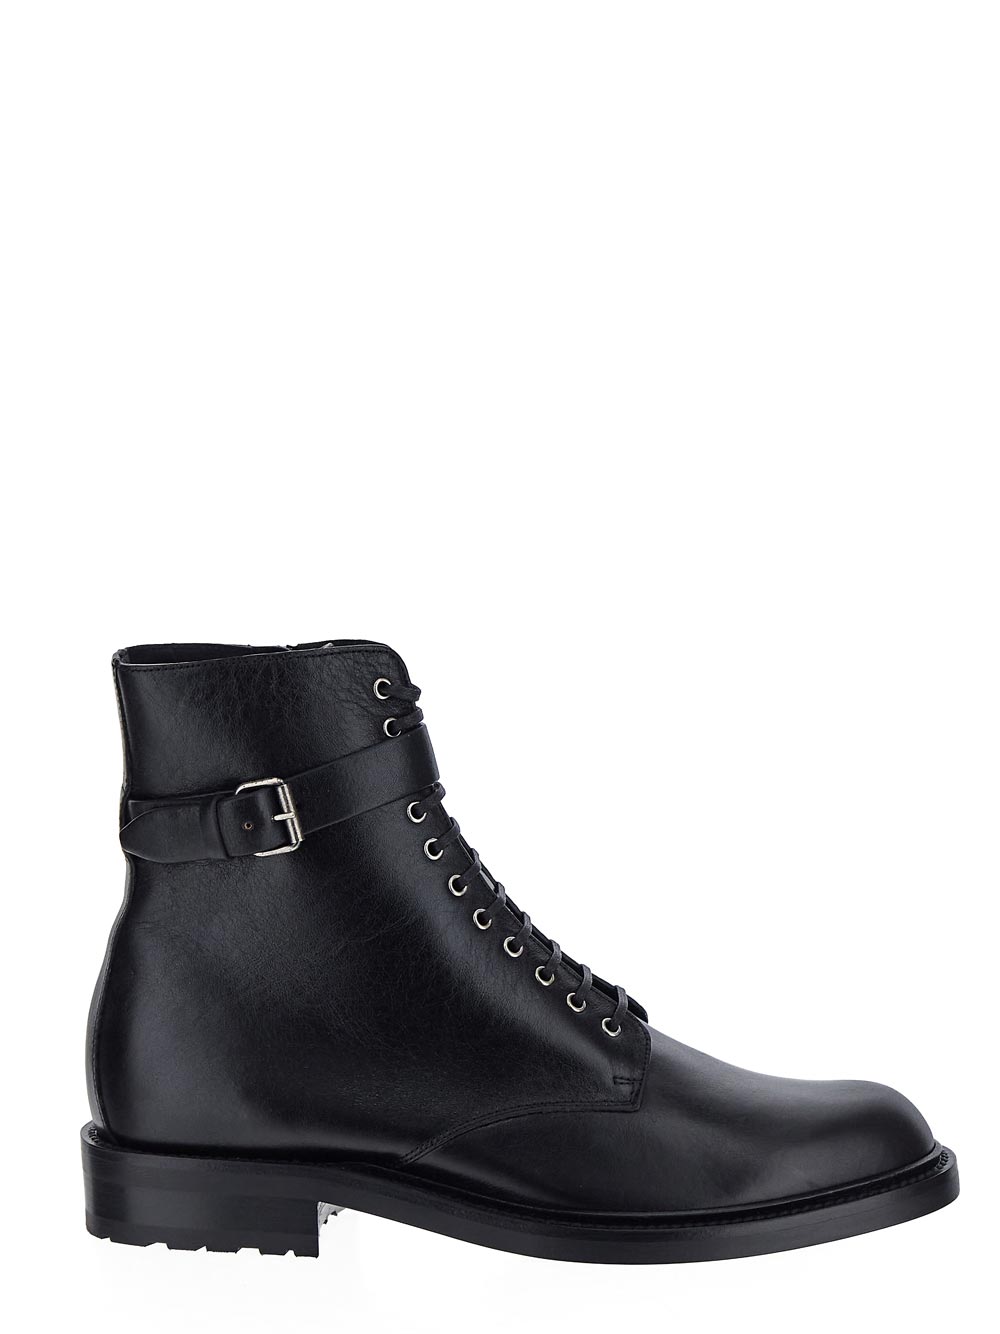 Saint Laurent SAINT LAURENT Boots black 71123400E001000